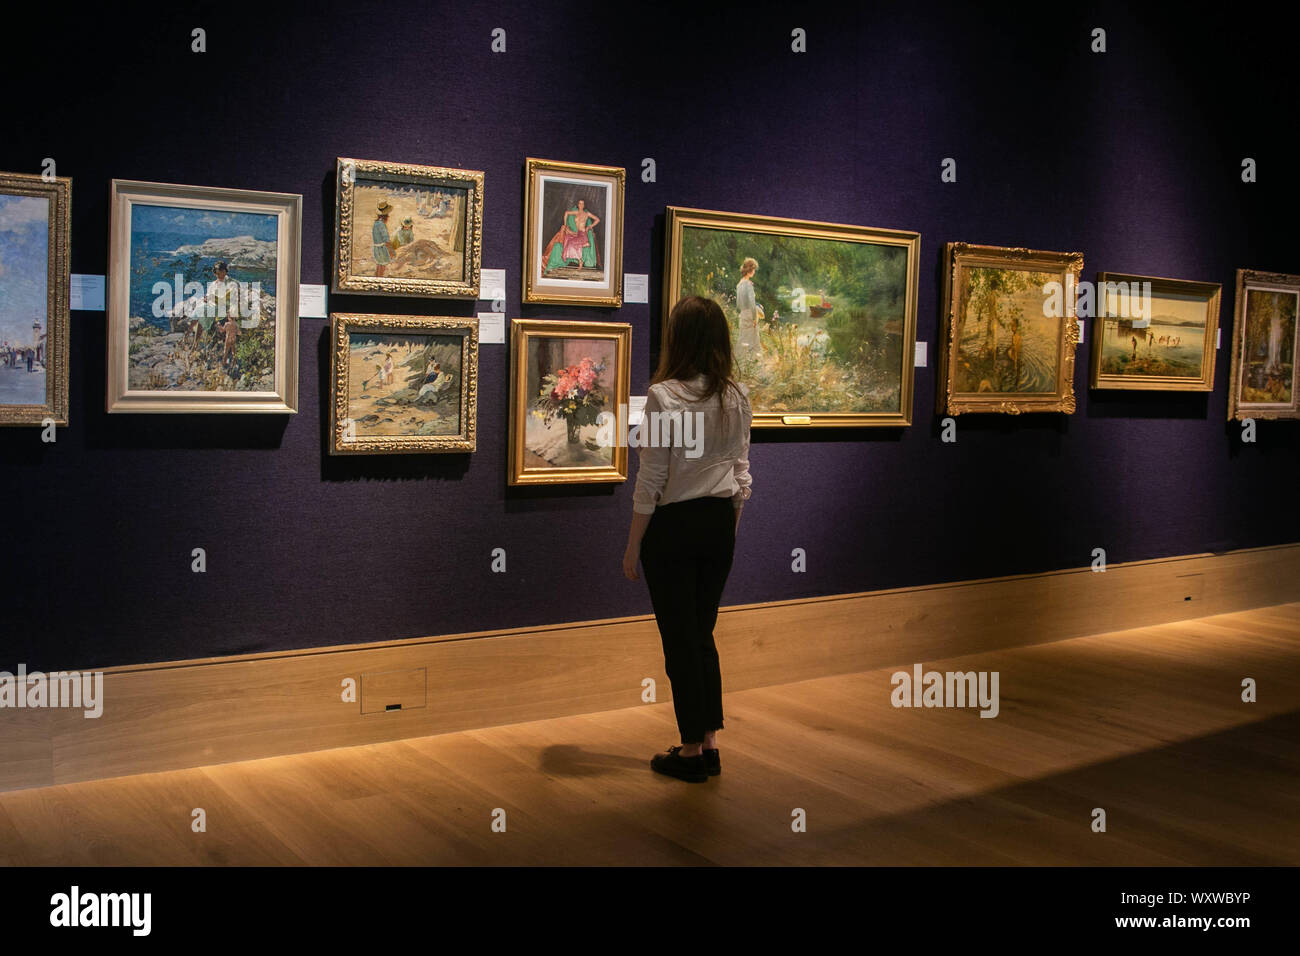 LONDON, Großbritannien - 18 September 2019: 2019 ein Bonhams assistant Ansichten eine Anzeige der seltene 19. Jahrhundert europäischer, viktorianischen und Britischen impressionistischer Kunst Credit: Amer ghazzal/Alamy leben Nachrichten Stockfoto